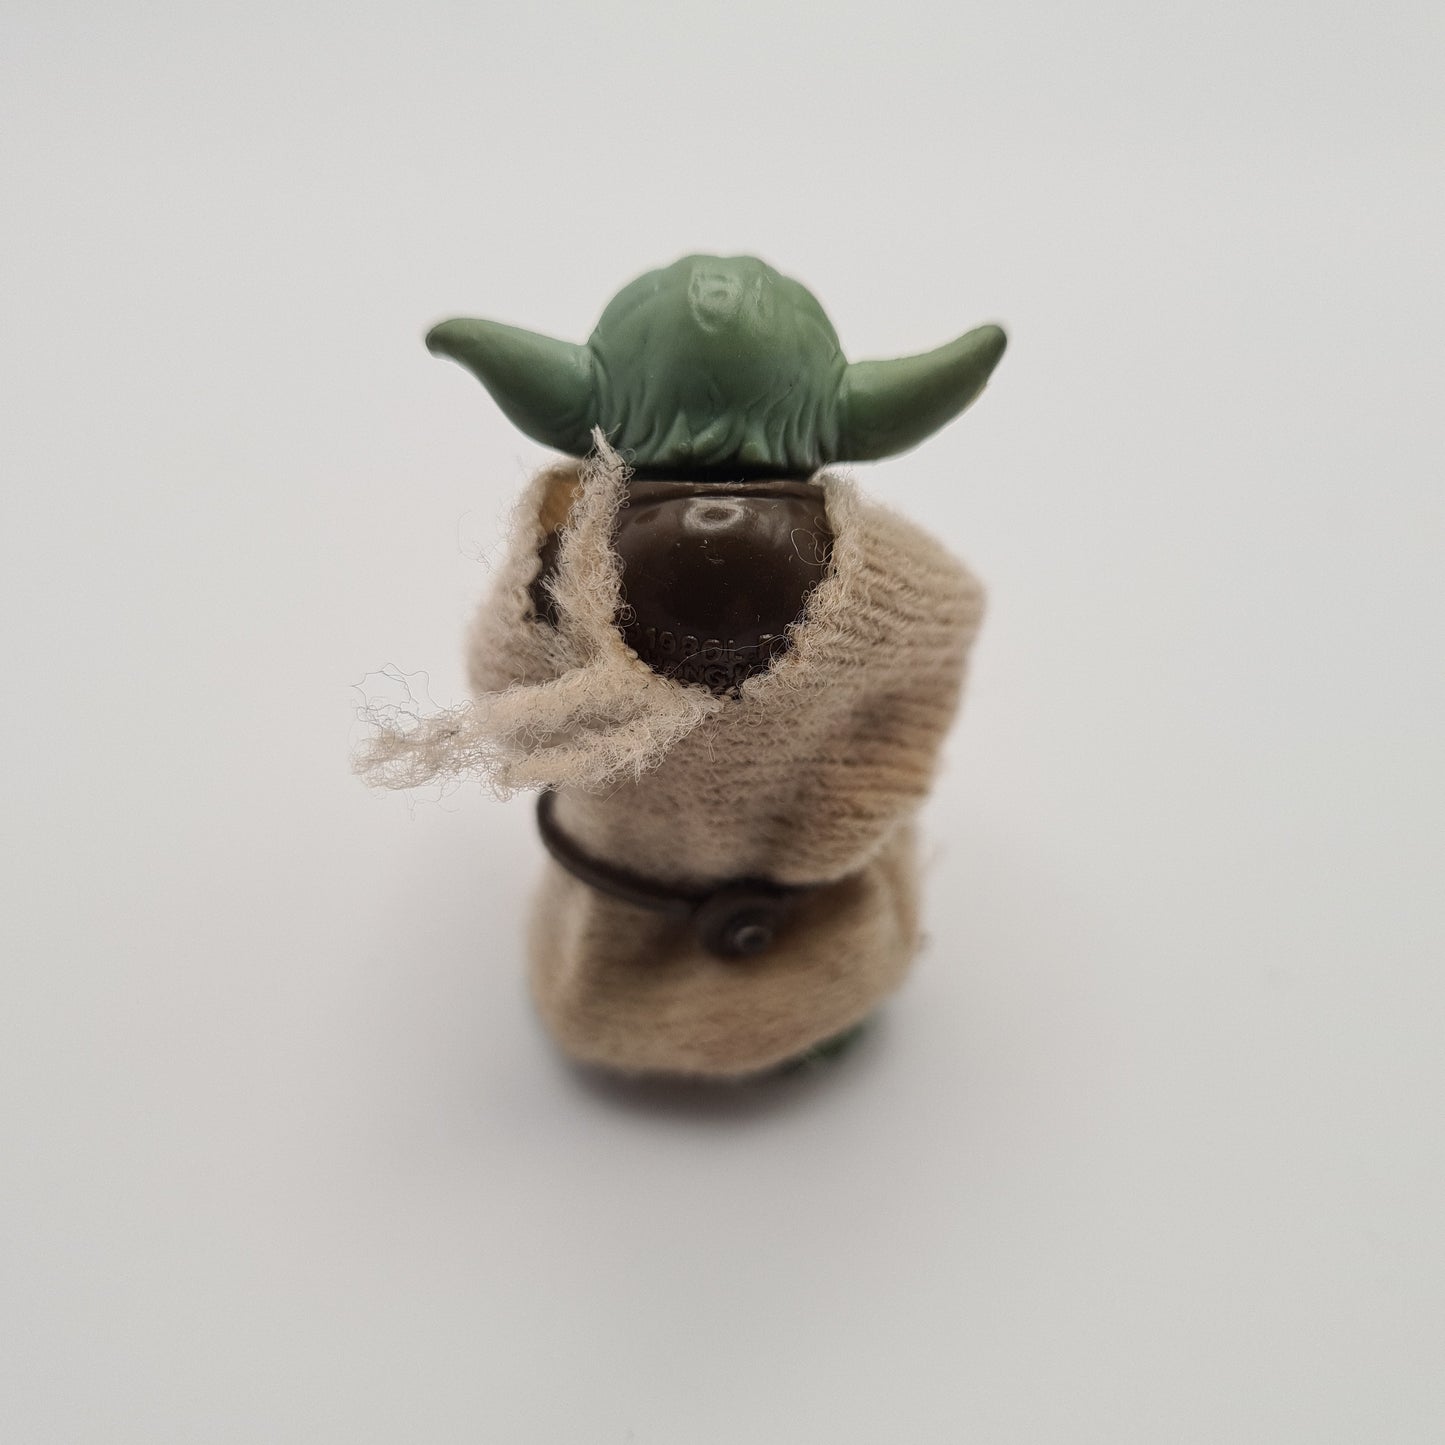 Yoda Star Wars Action Figure 1980